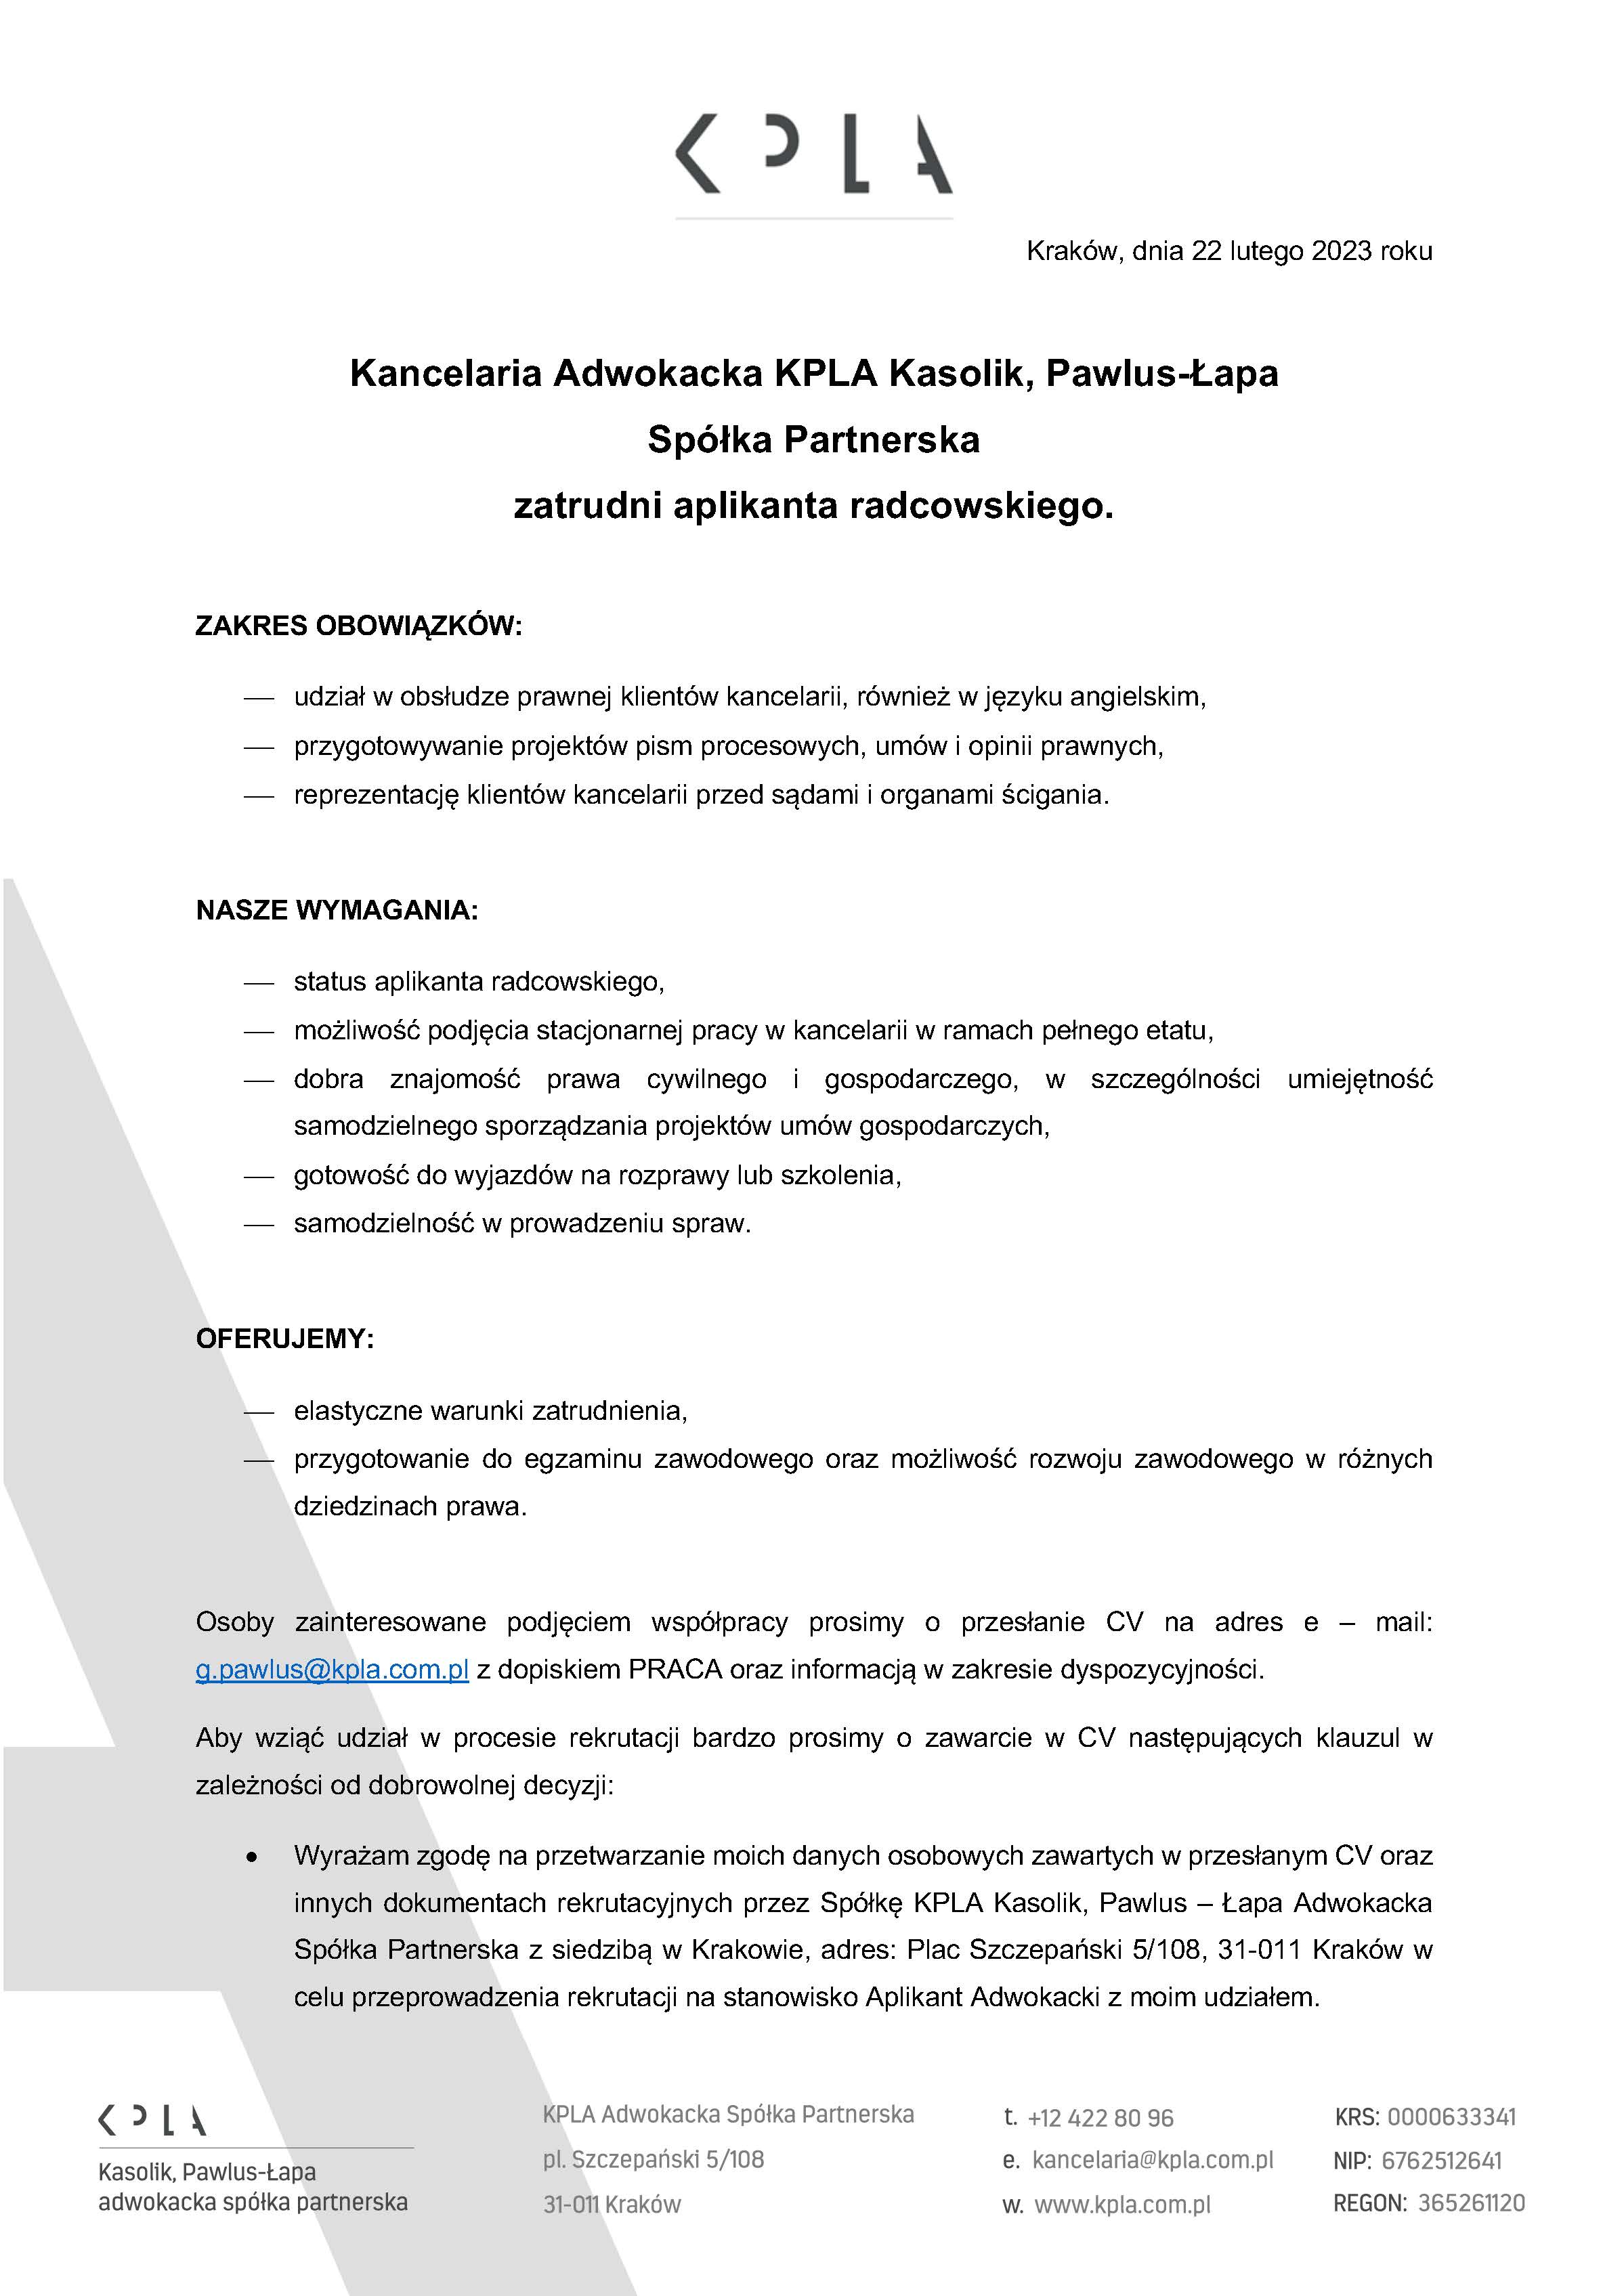 KPLA - oferta pracy (apl. radcowski)_Strona_1.jpg